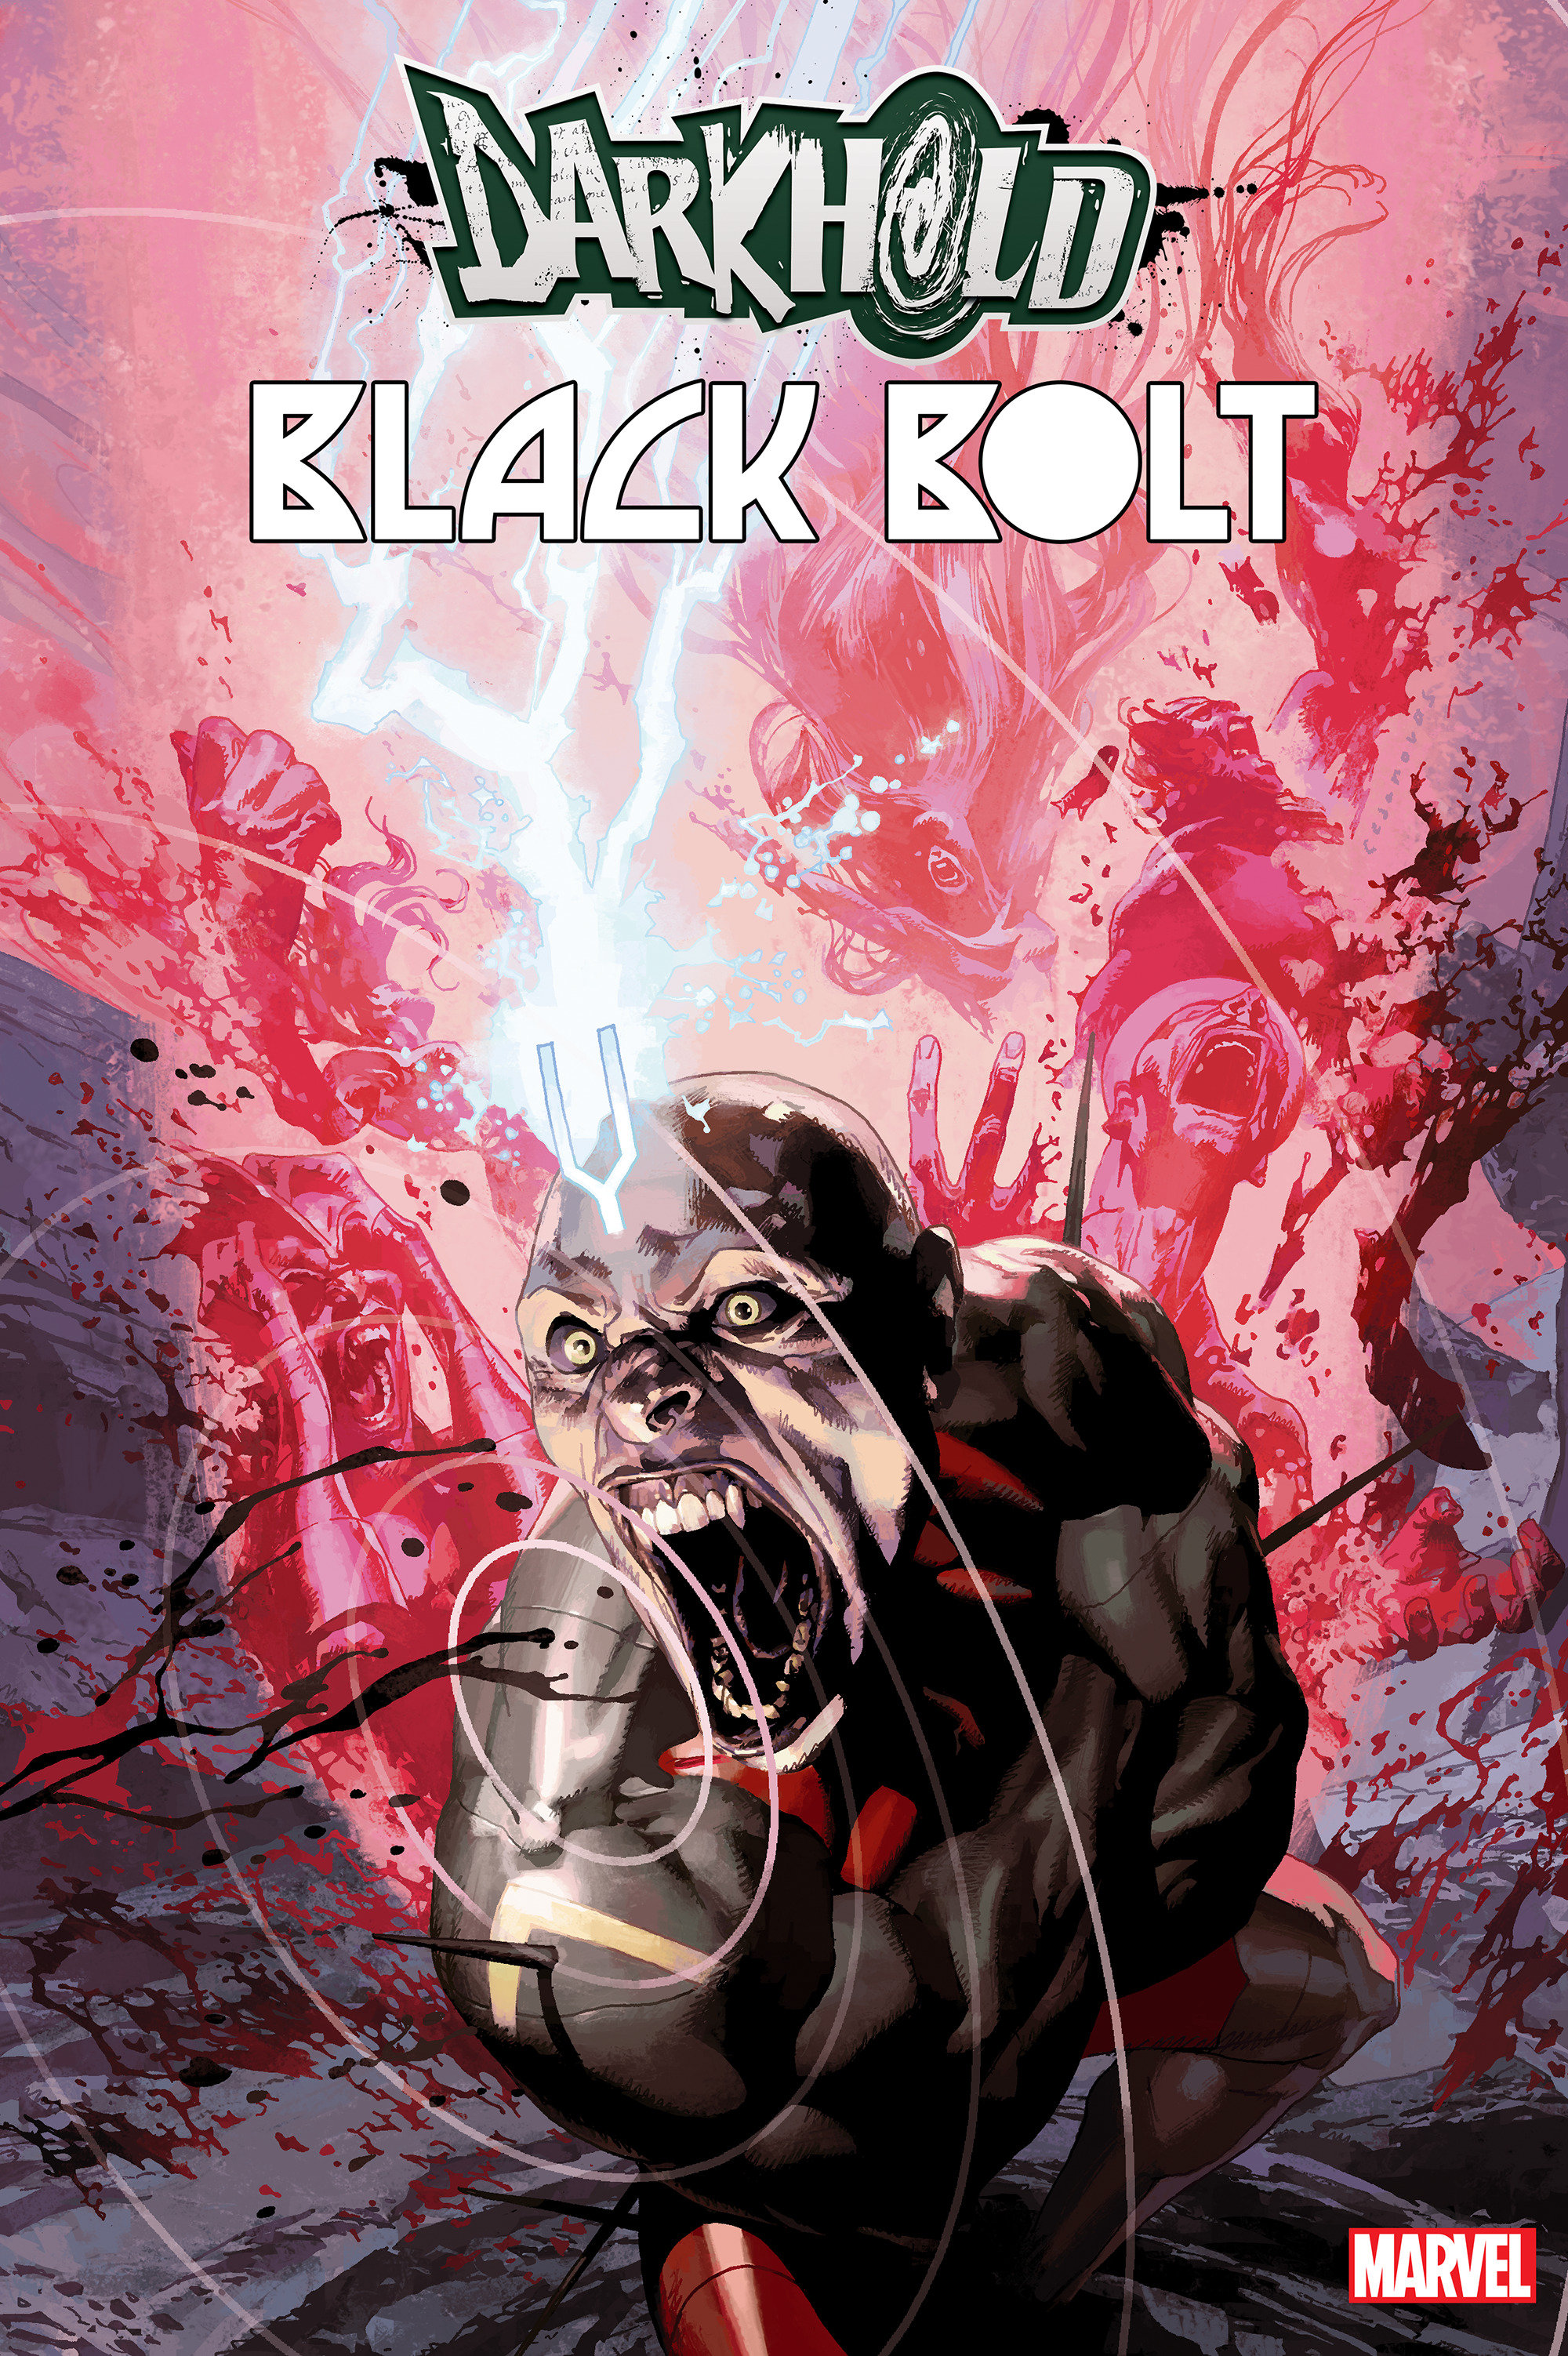 Darkhold Black Bolt #1 Casanovas Connecting Variant